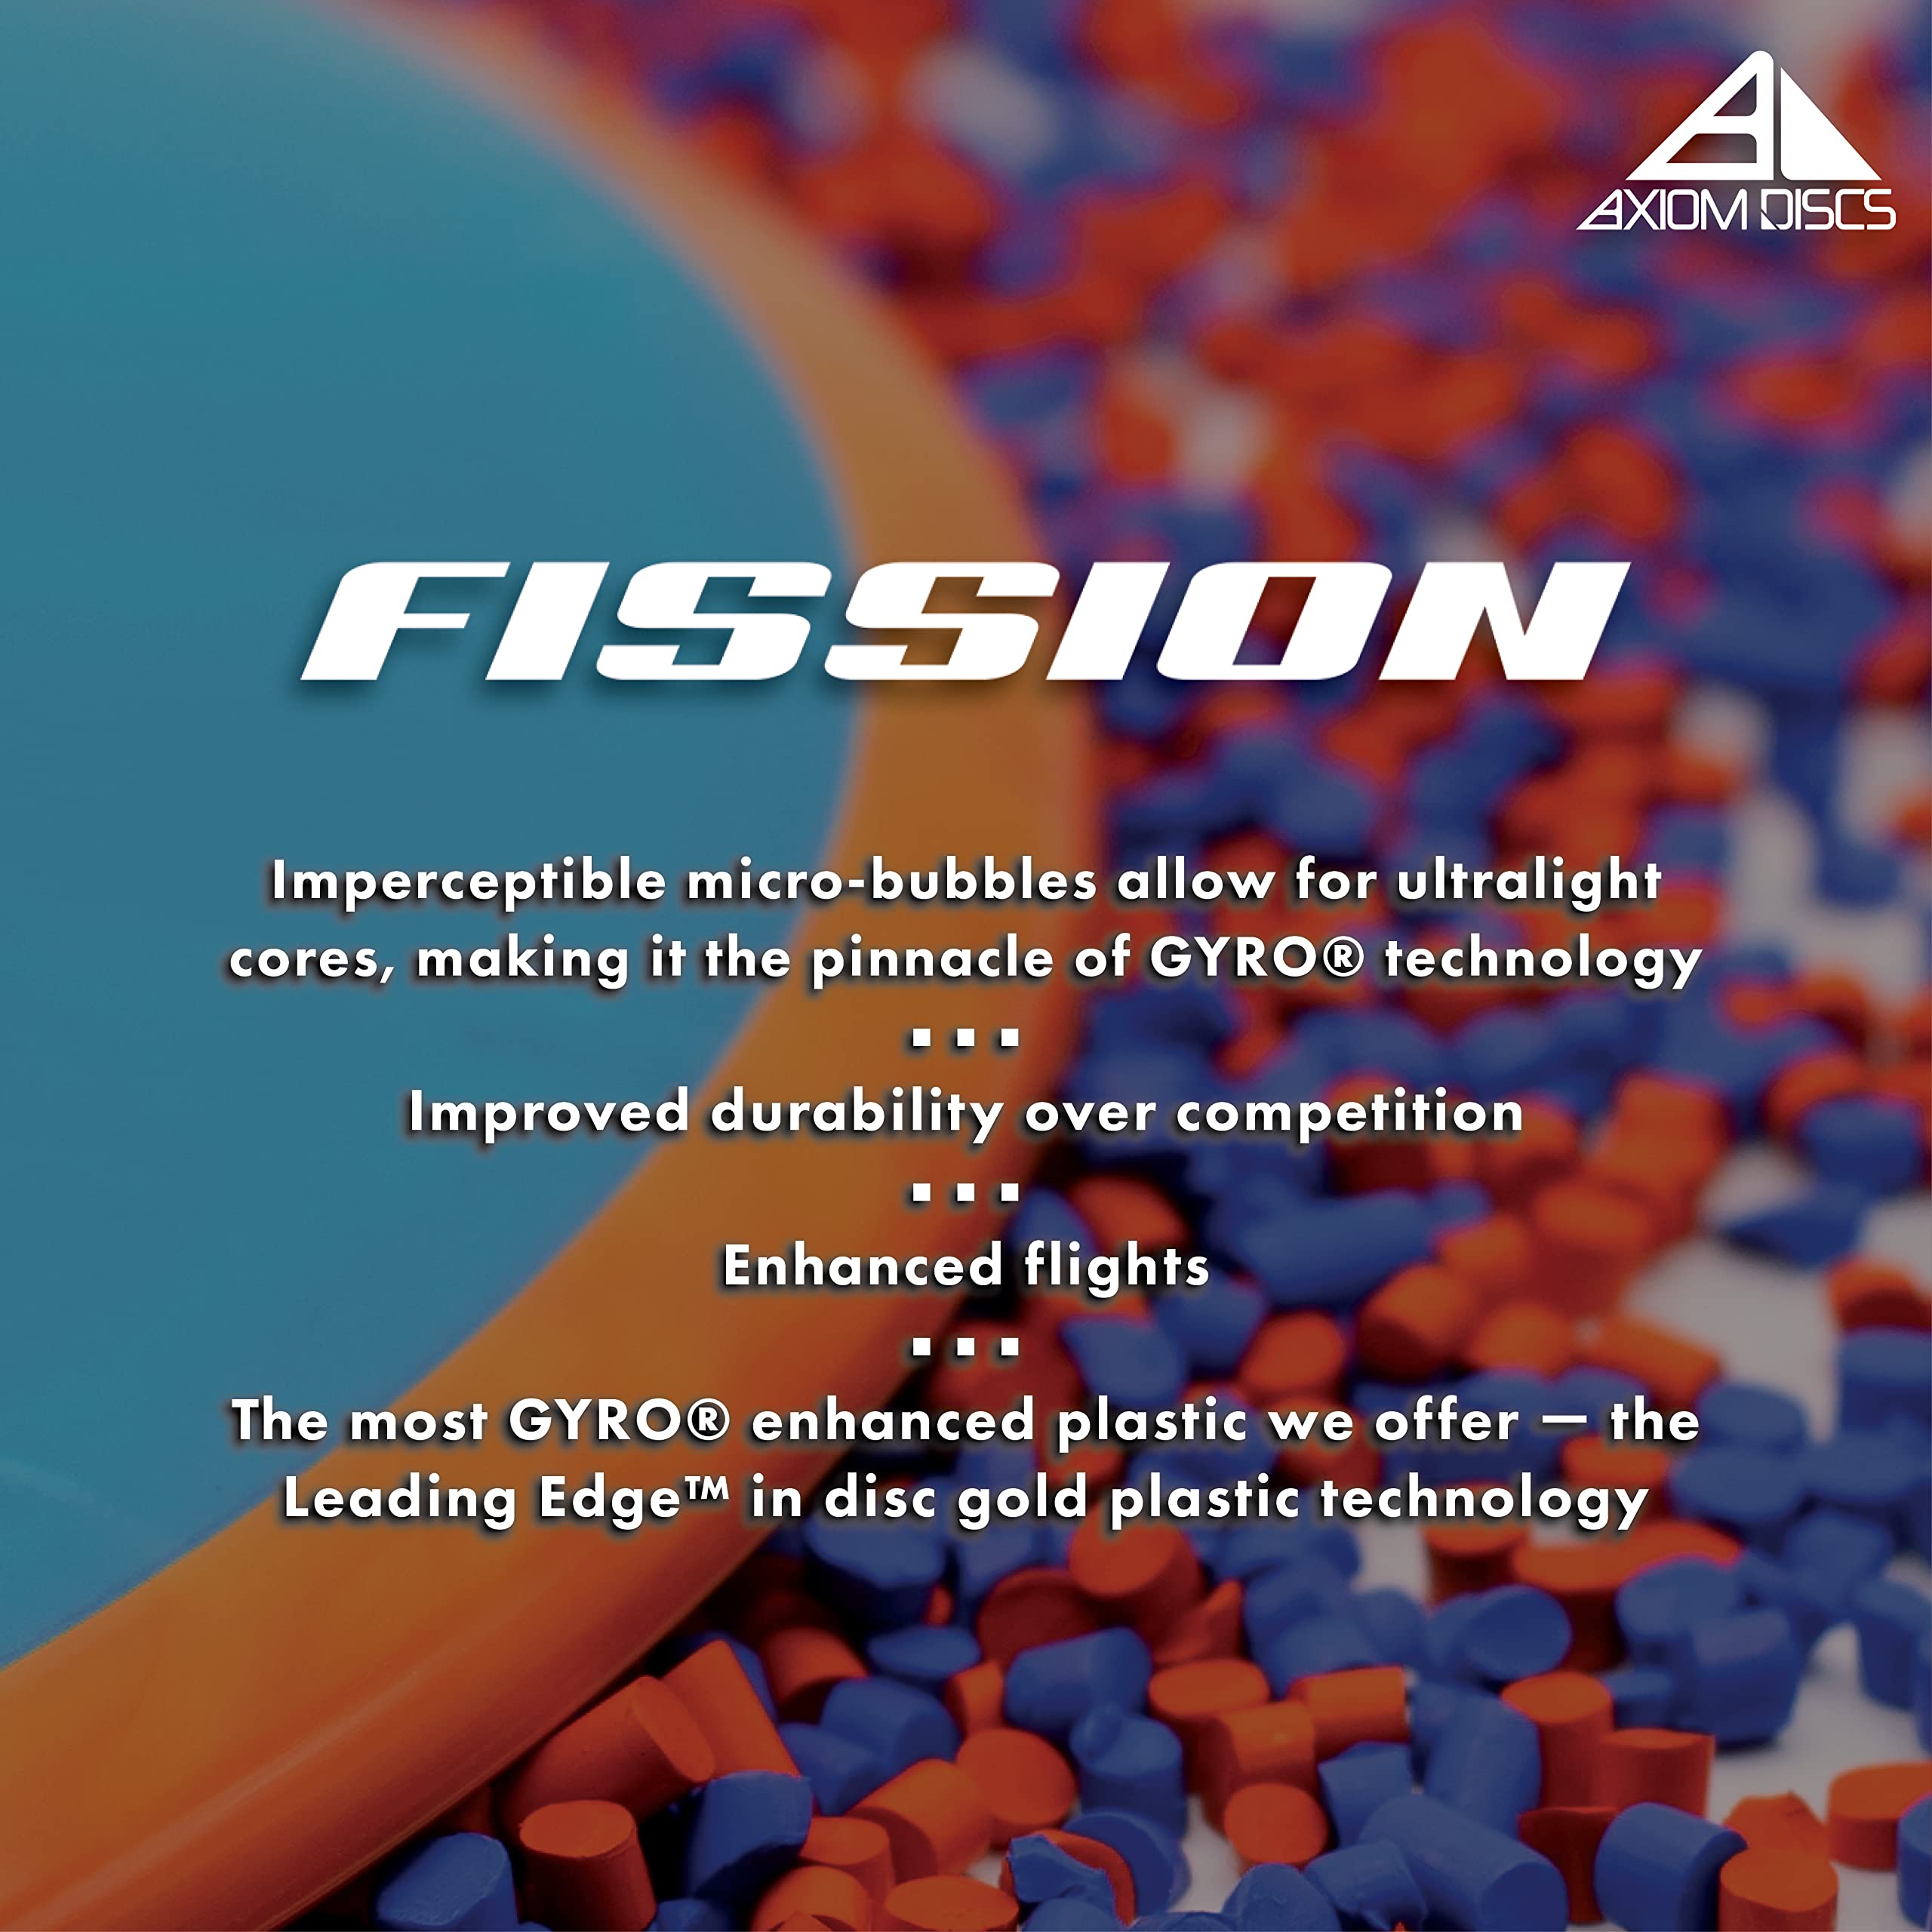 Axiom Discs Fission Fireball Disc Golf Distance Driver MKJZ80JJGX |64645|